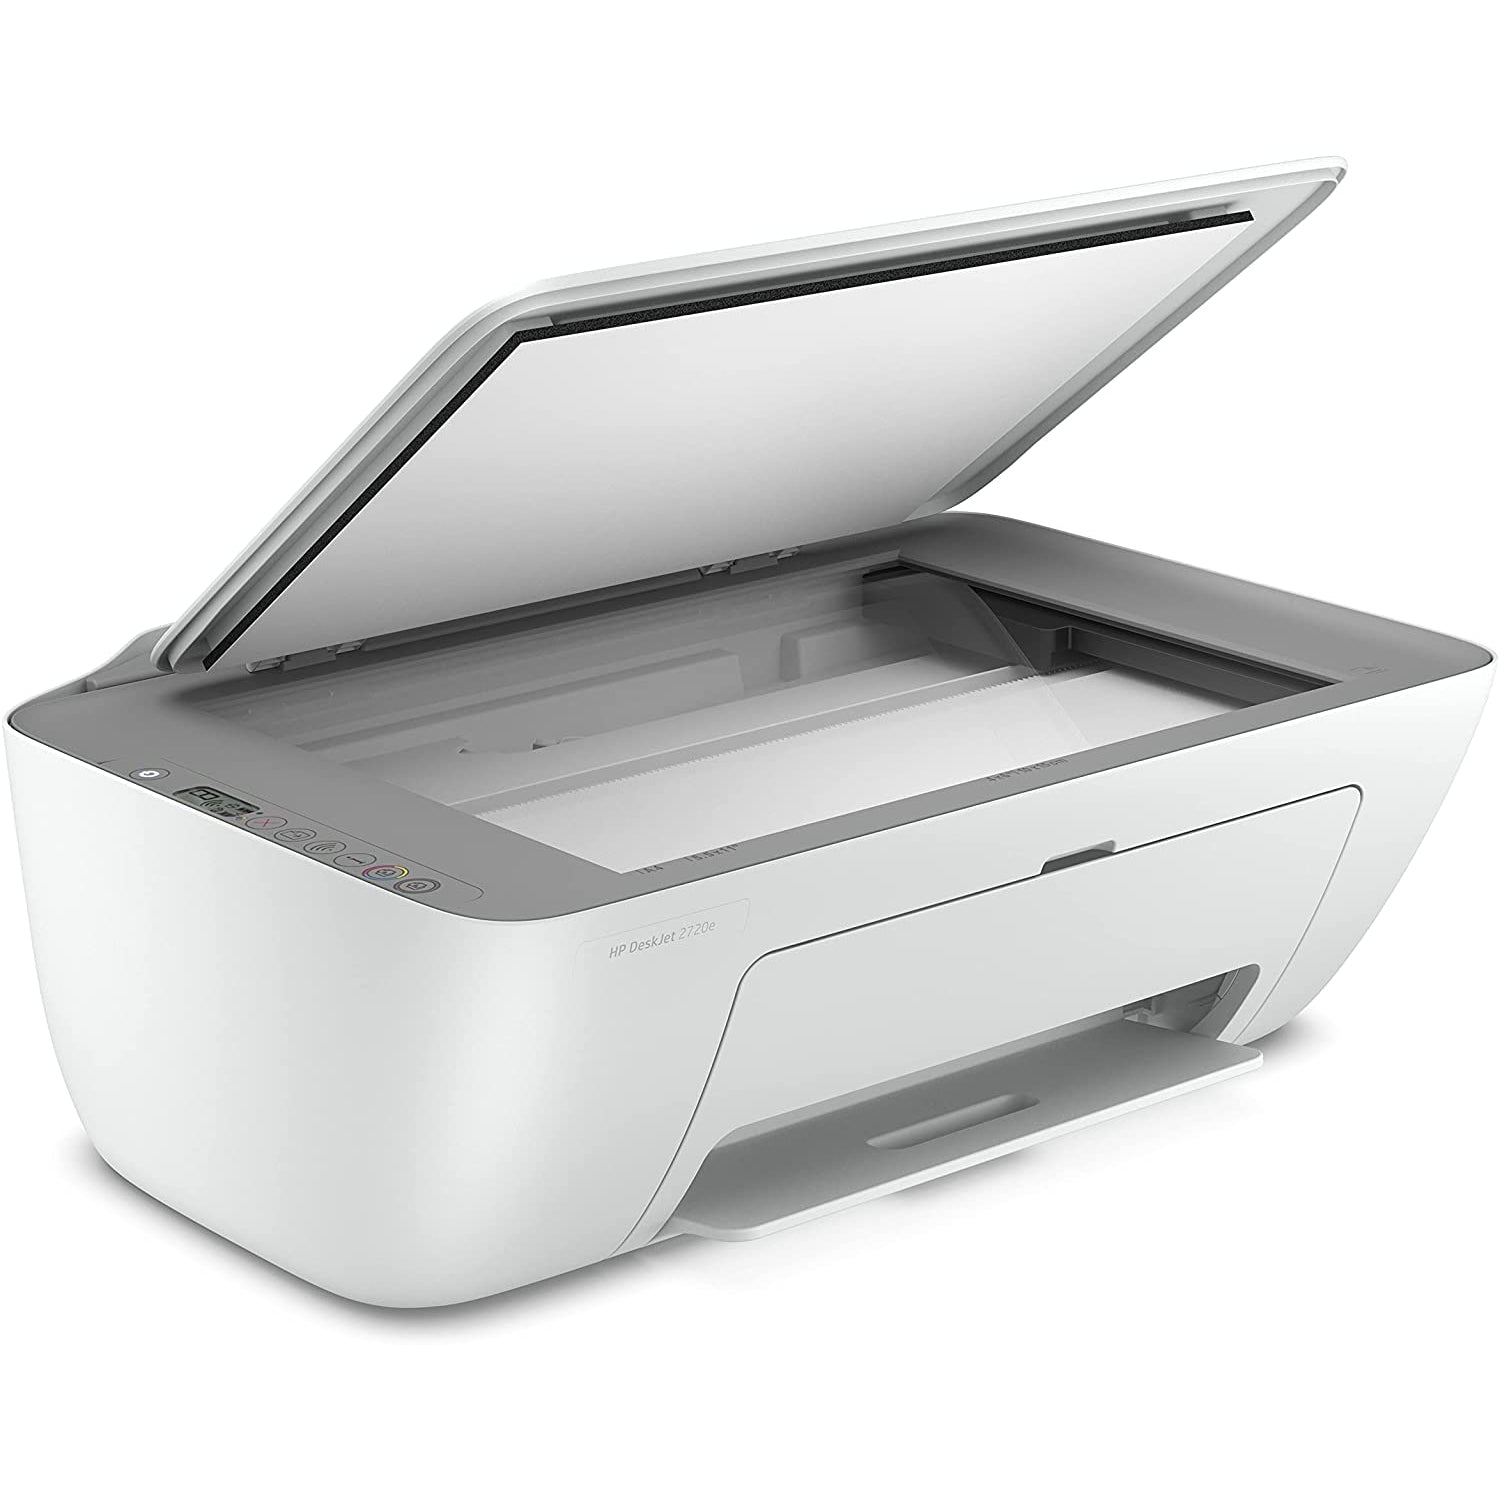 HP DeskJet 2720e All-in-One Colour Printer - White